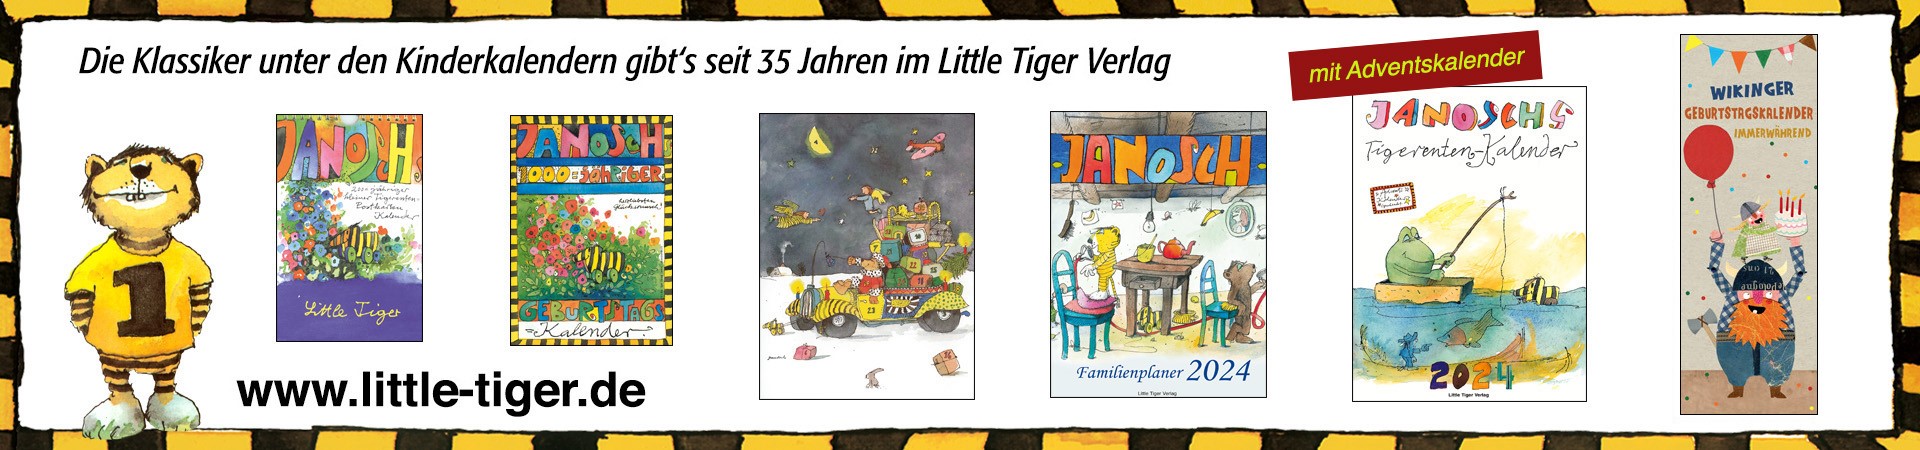 Bild für Little Tiger Verlag